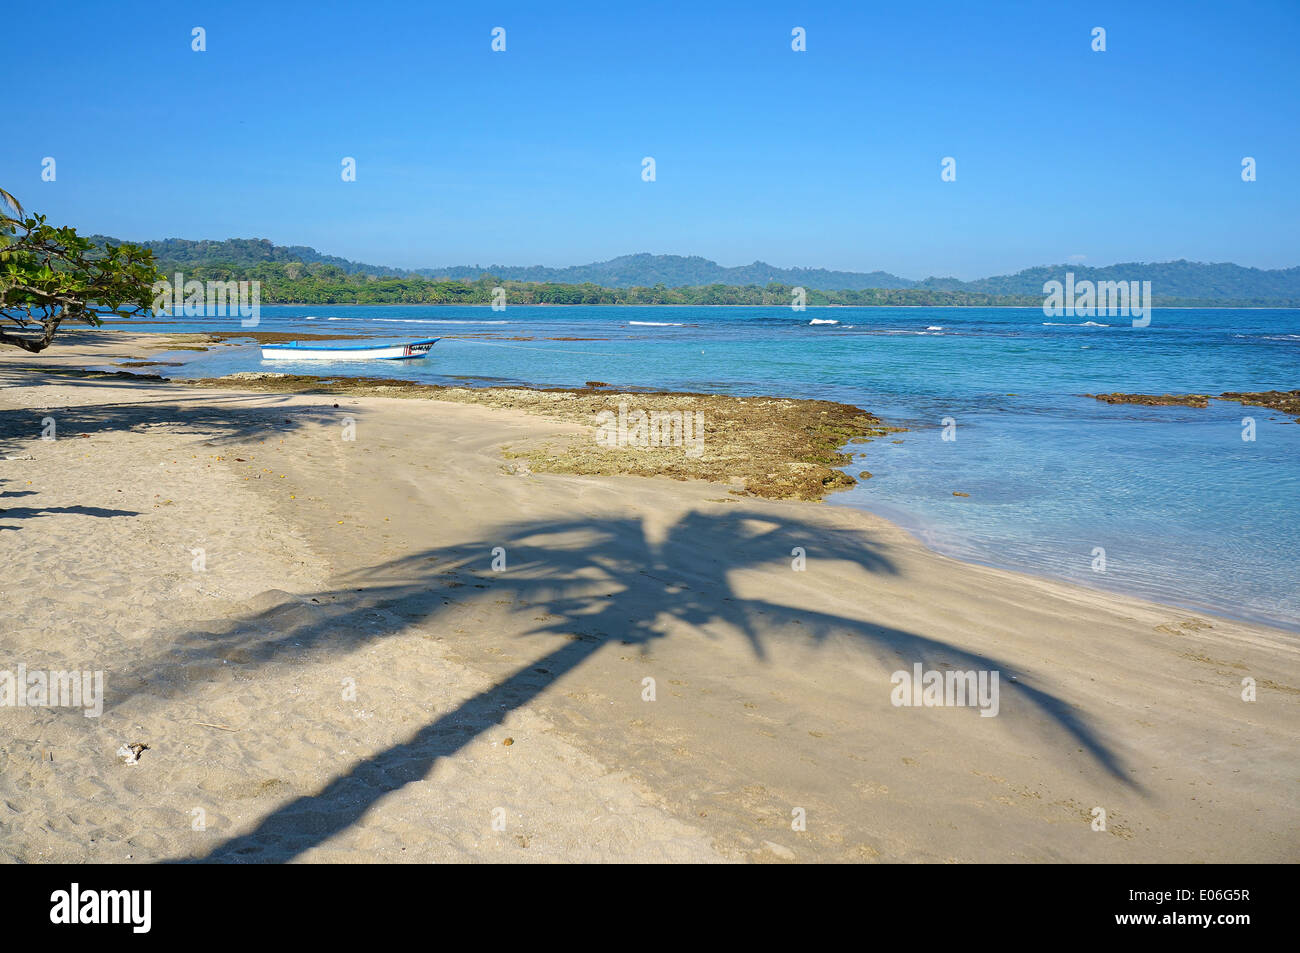 Sombra de palmeras en una playa tranquila, mar Caribe, Puerto Viejo de Talamanca, Costa Rica Foto de stock